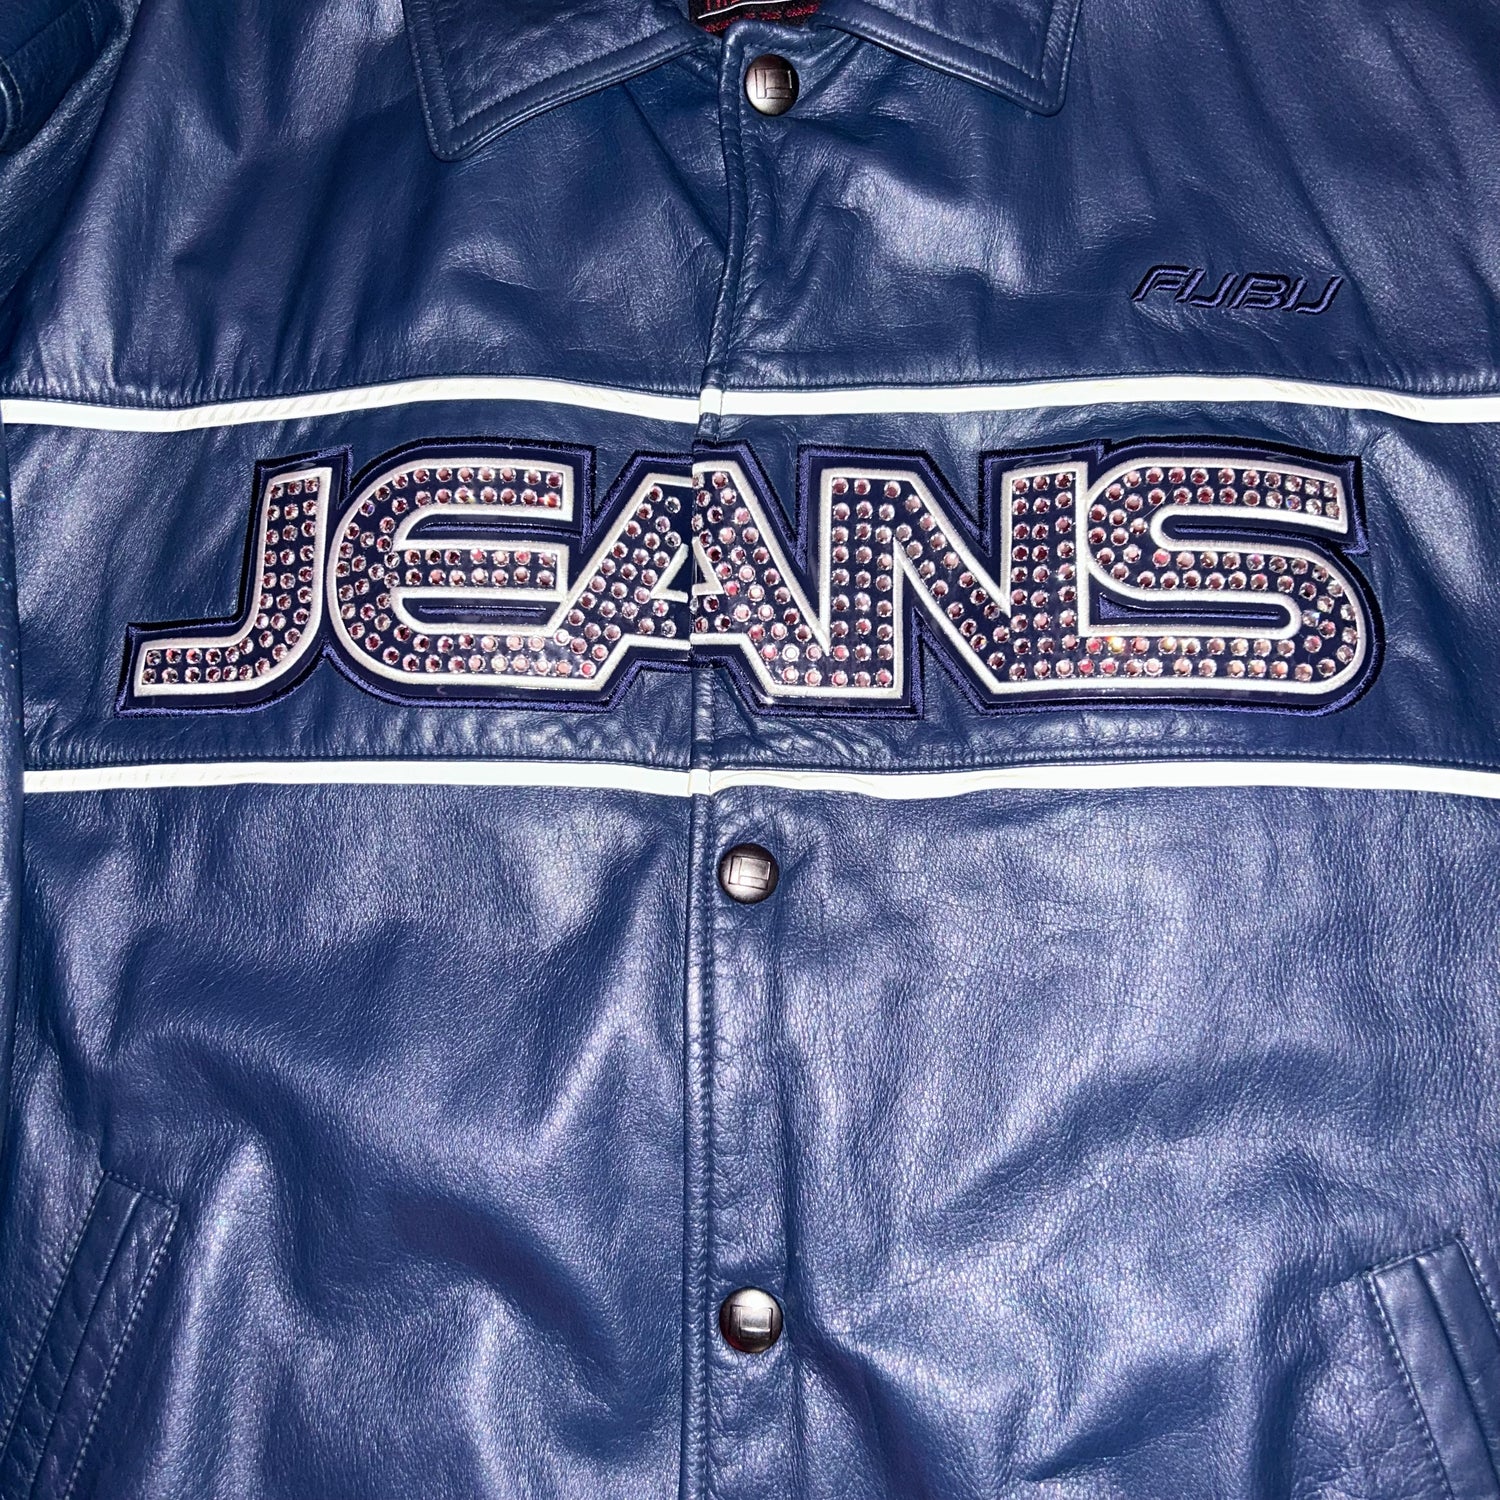 Giacca in Pelle FUBU Jeans Vintage  (XXL)